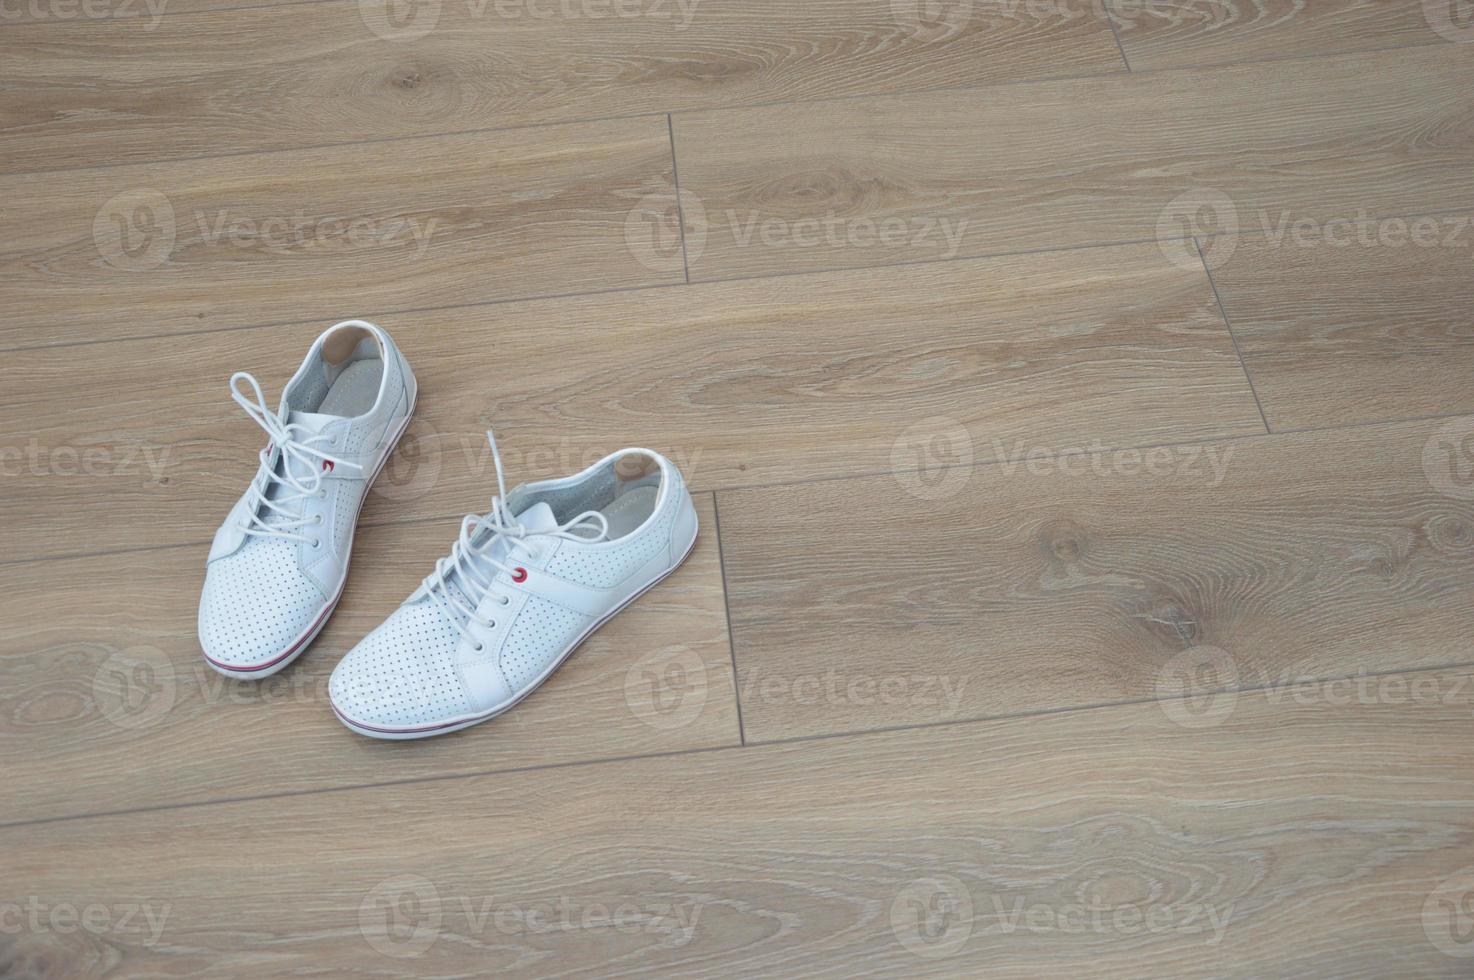 sapatos converse brancos para caminhar, caminhar, de pé sobre um piso de madeira marrom. adesivo anti-milho na parte de trás do calcanhar. foto